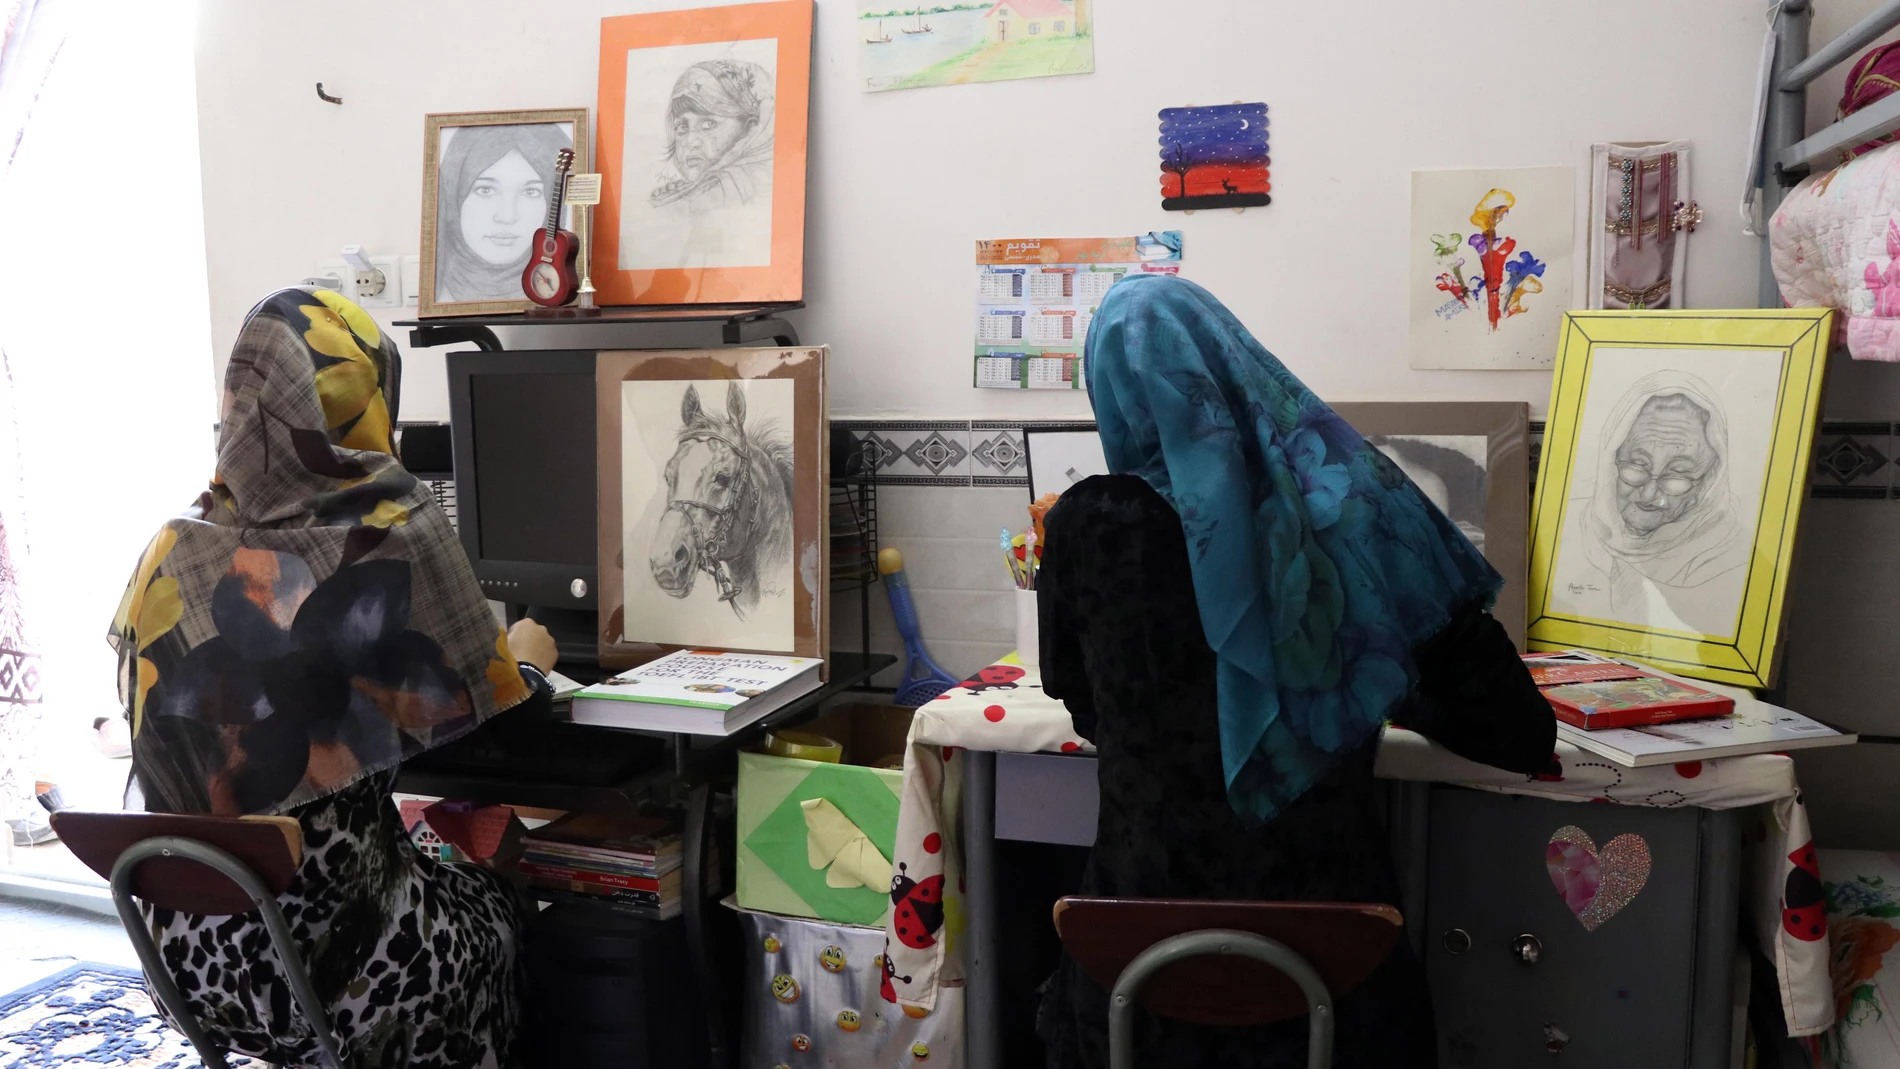 Hermanas Masooma (i) y Shokofa (d) solían aprender habilidades artísticas, como pintura, dibujo y caligrafía en una escuela de arte antes de la toma de posesión de los Talibanes.